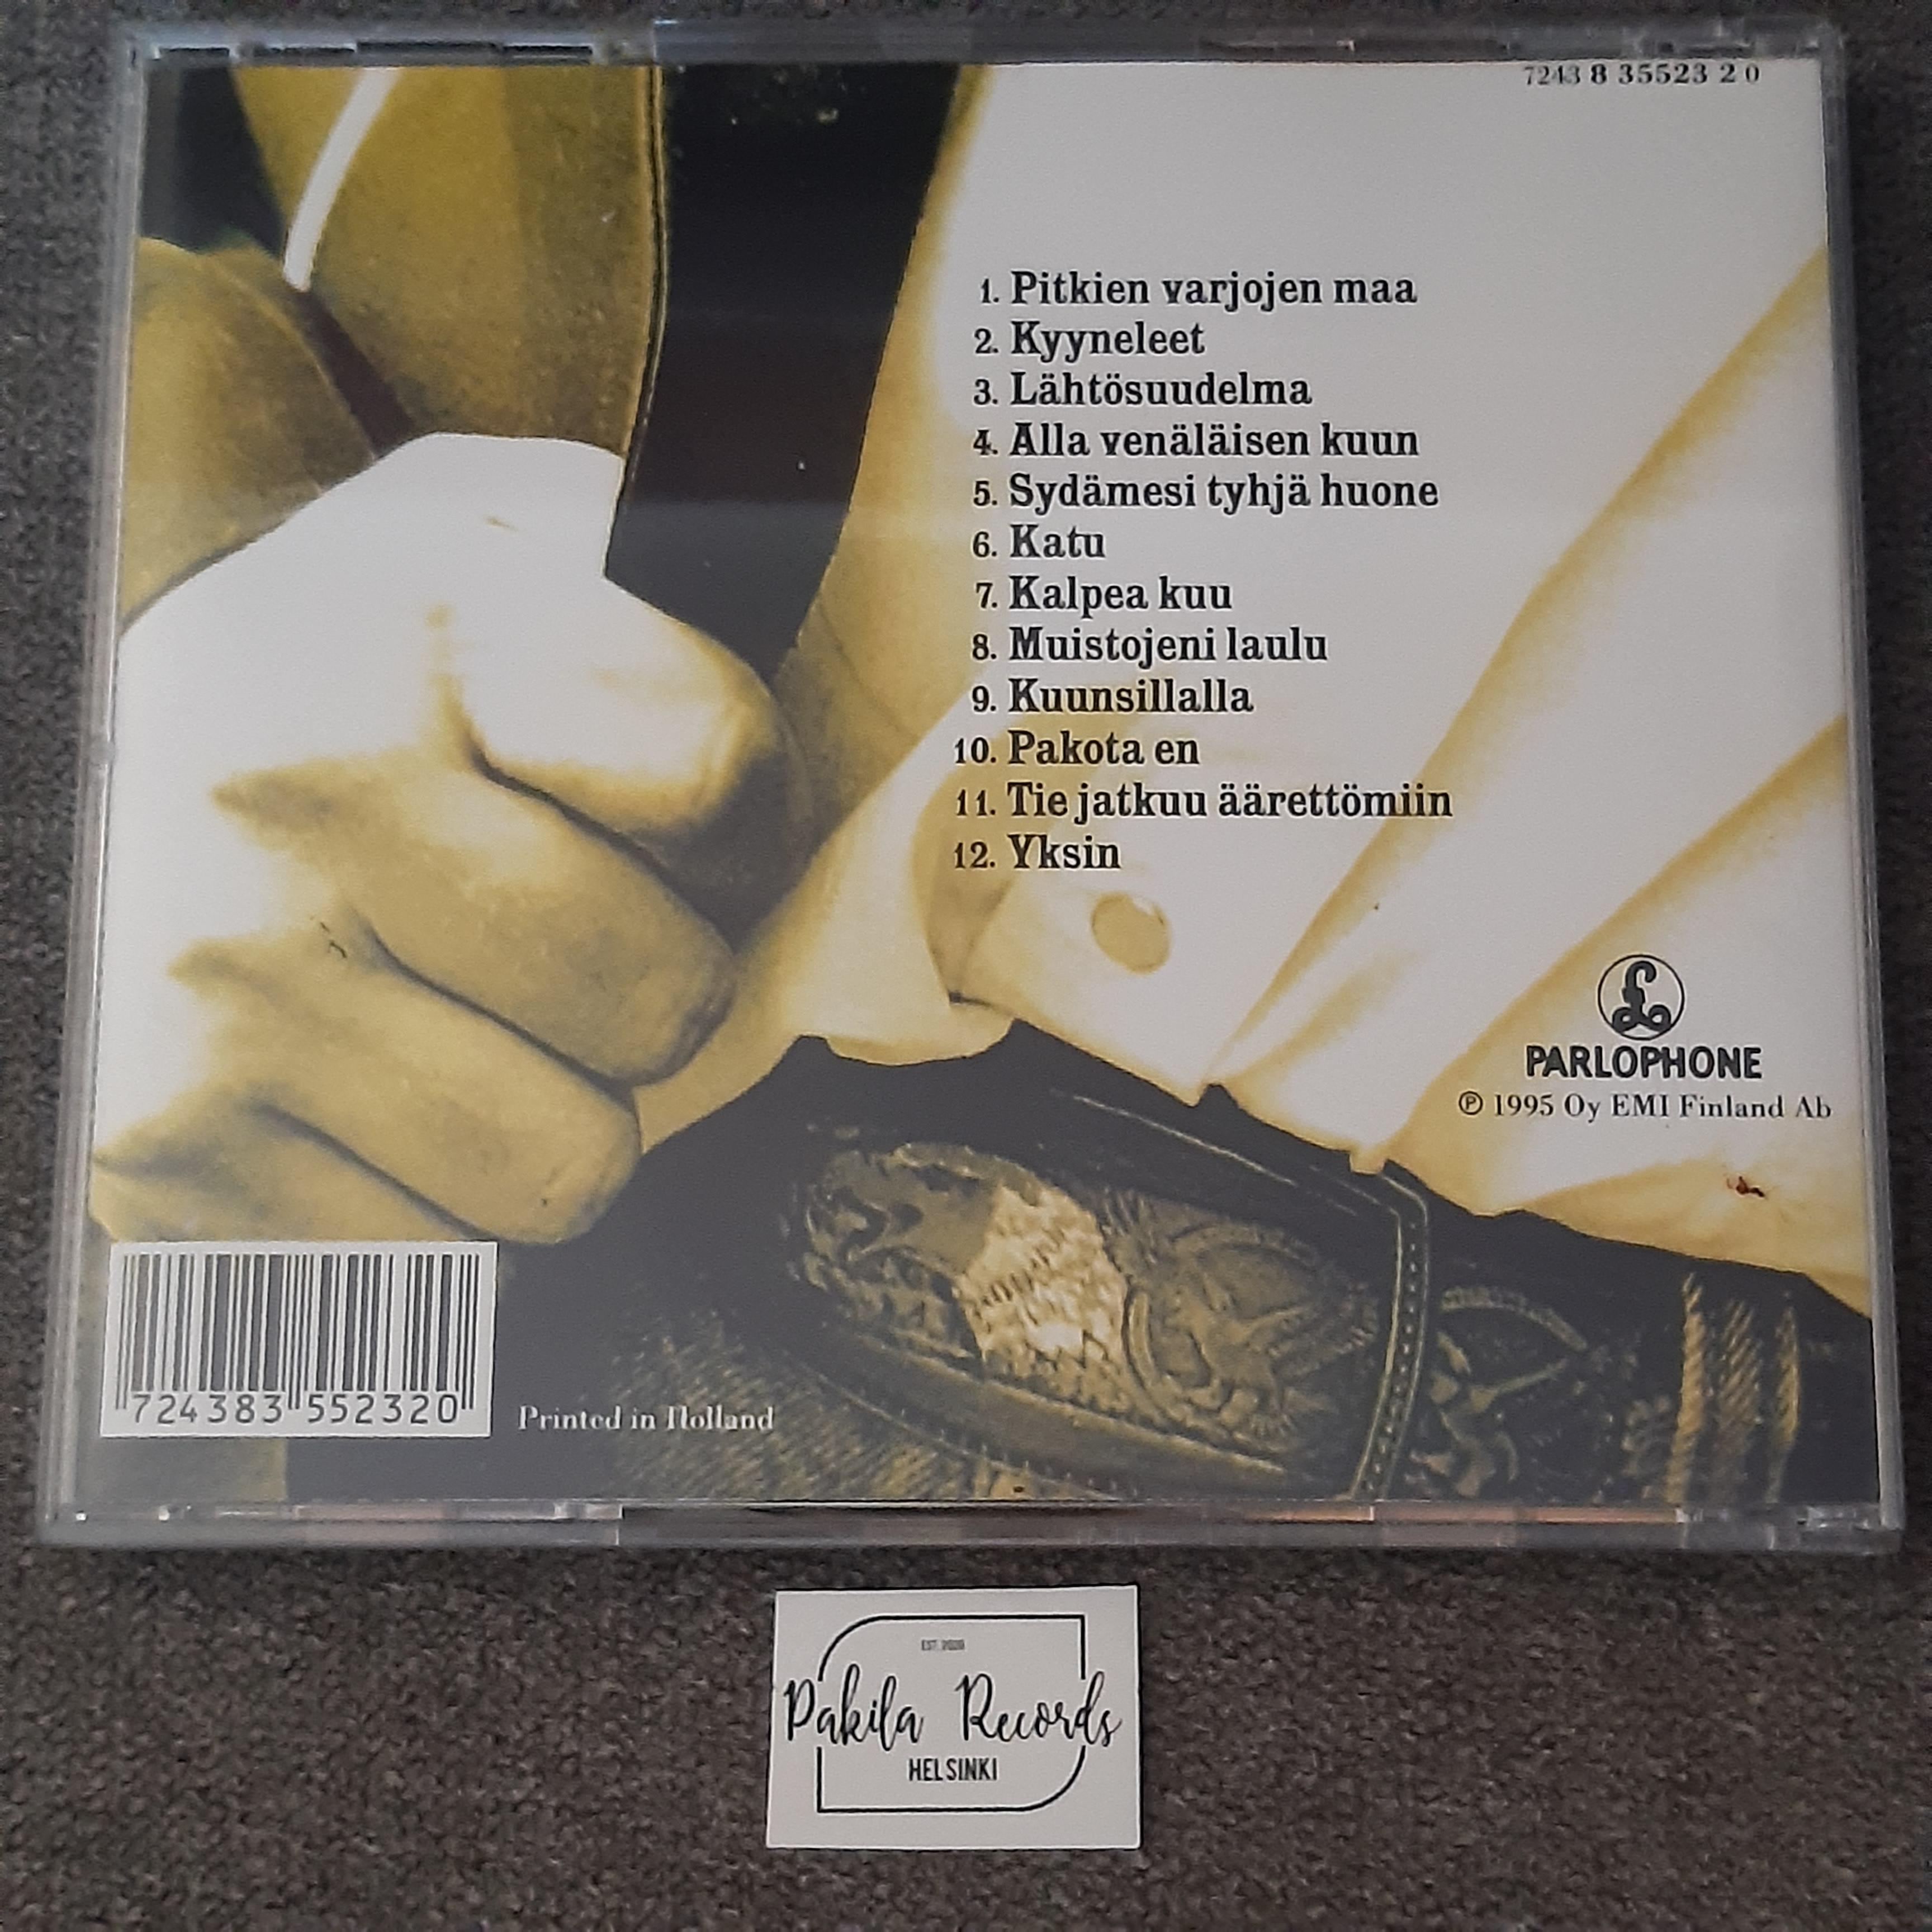 Topi Sorsakoski - Yksinäisyys, osa 2 - CD (käytetty)